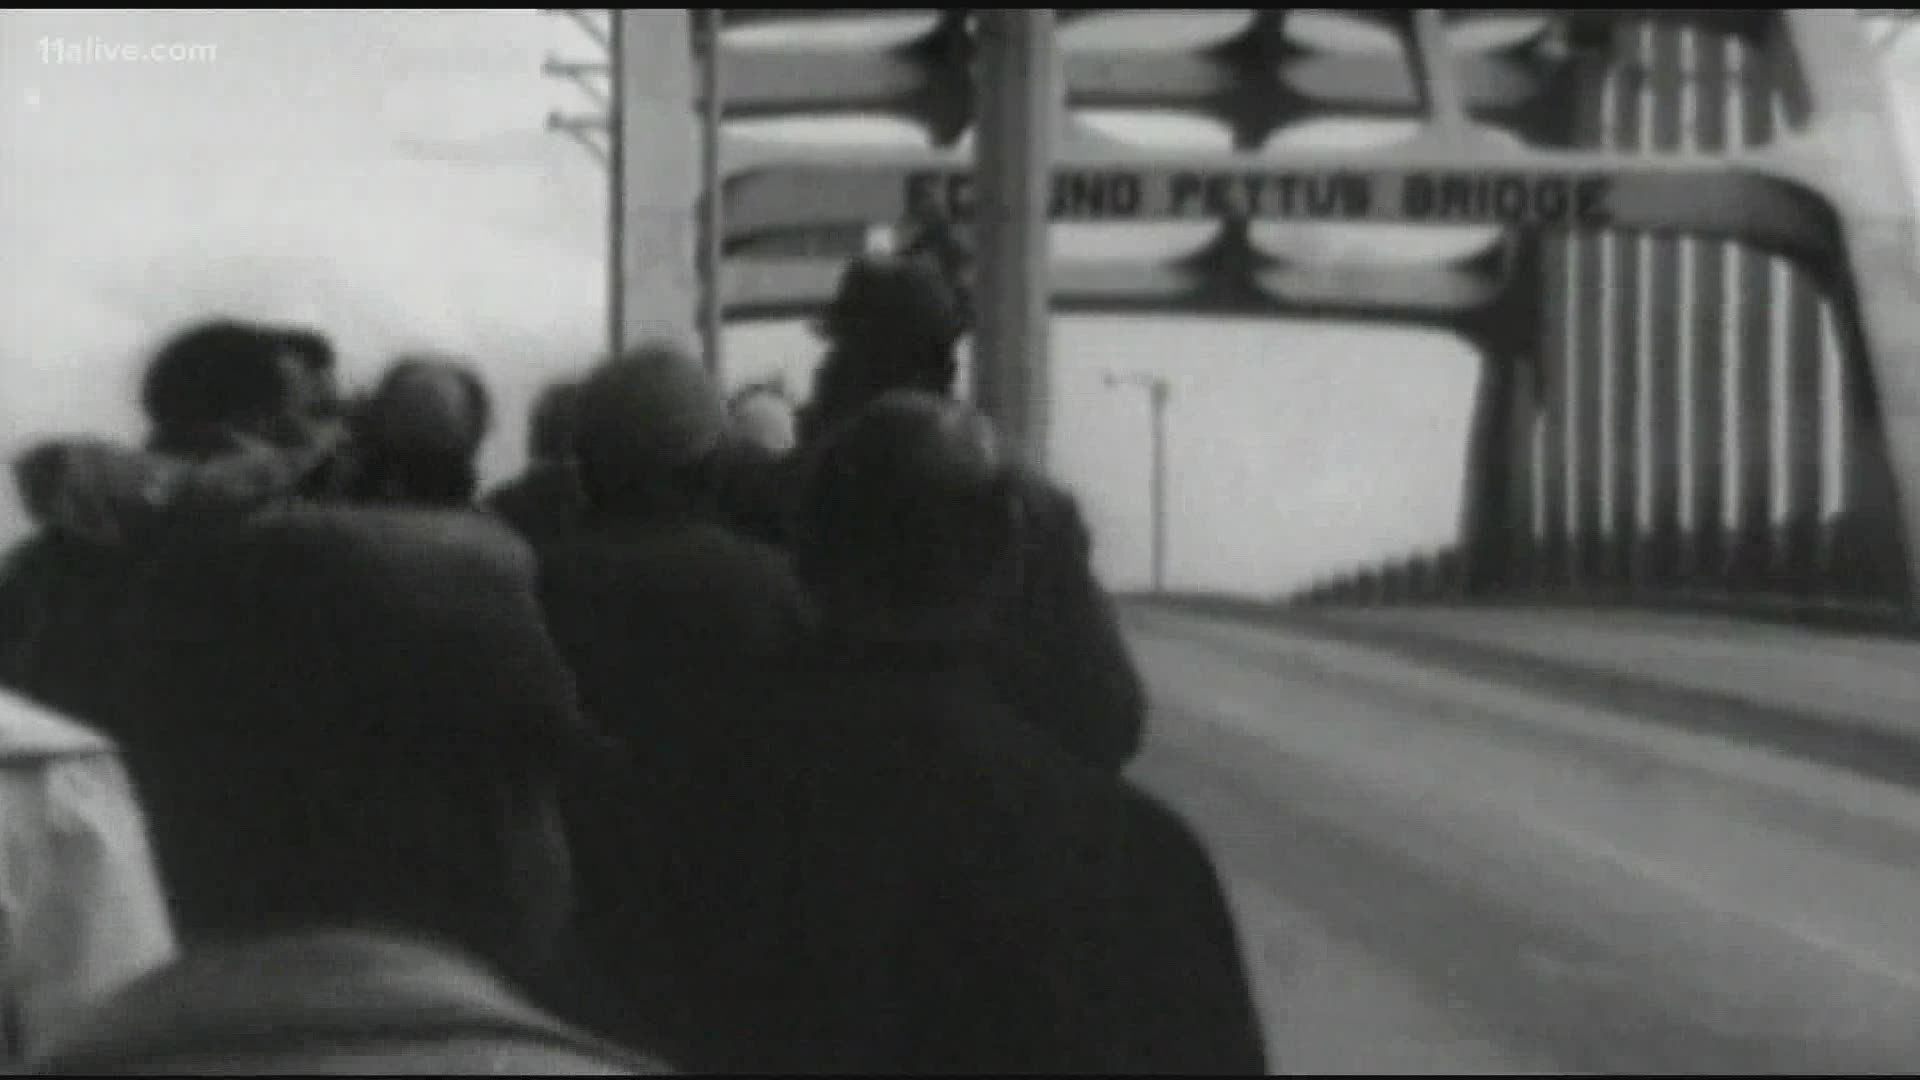 The bridge is in Selma, Alabama.